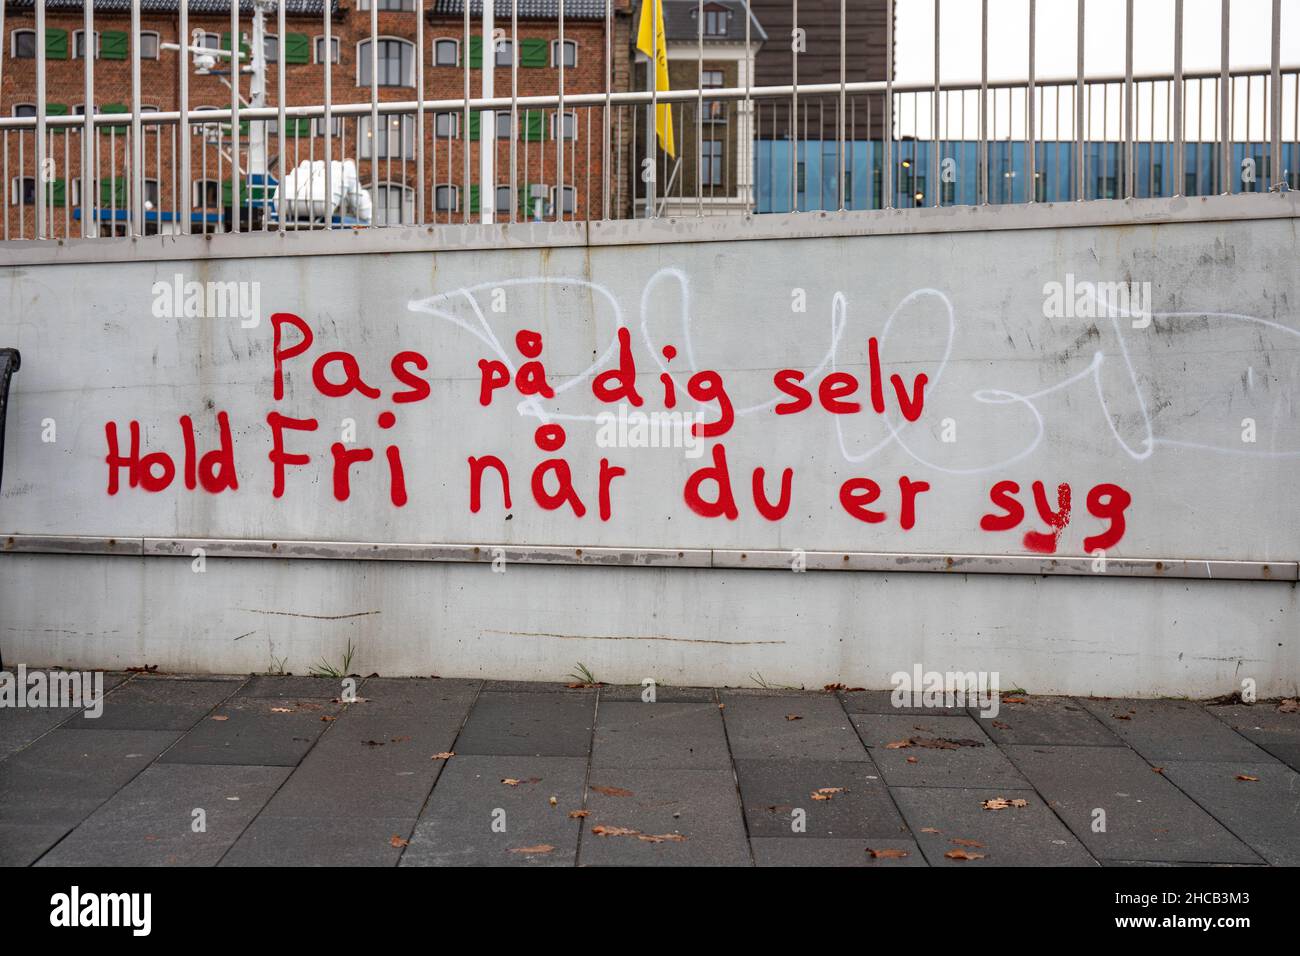 Pas på dig selv. Mantener el sistema de viernes når du er. Graffiti en el distrito Gammelholm de Copenhague, Dinamarca. Foto de stock